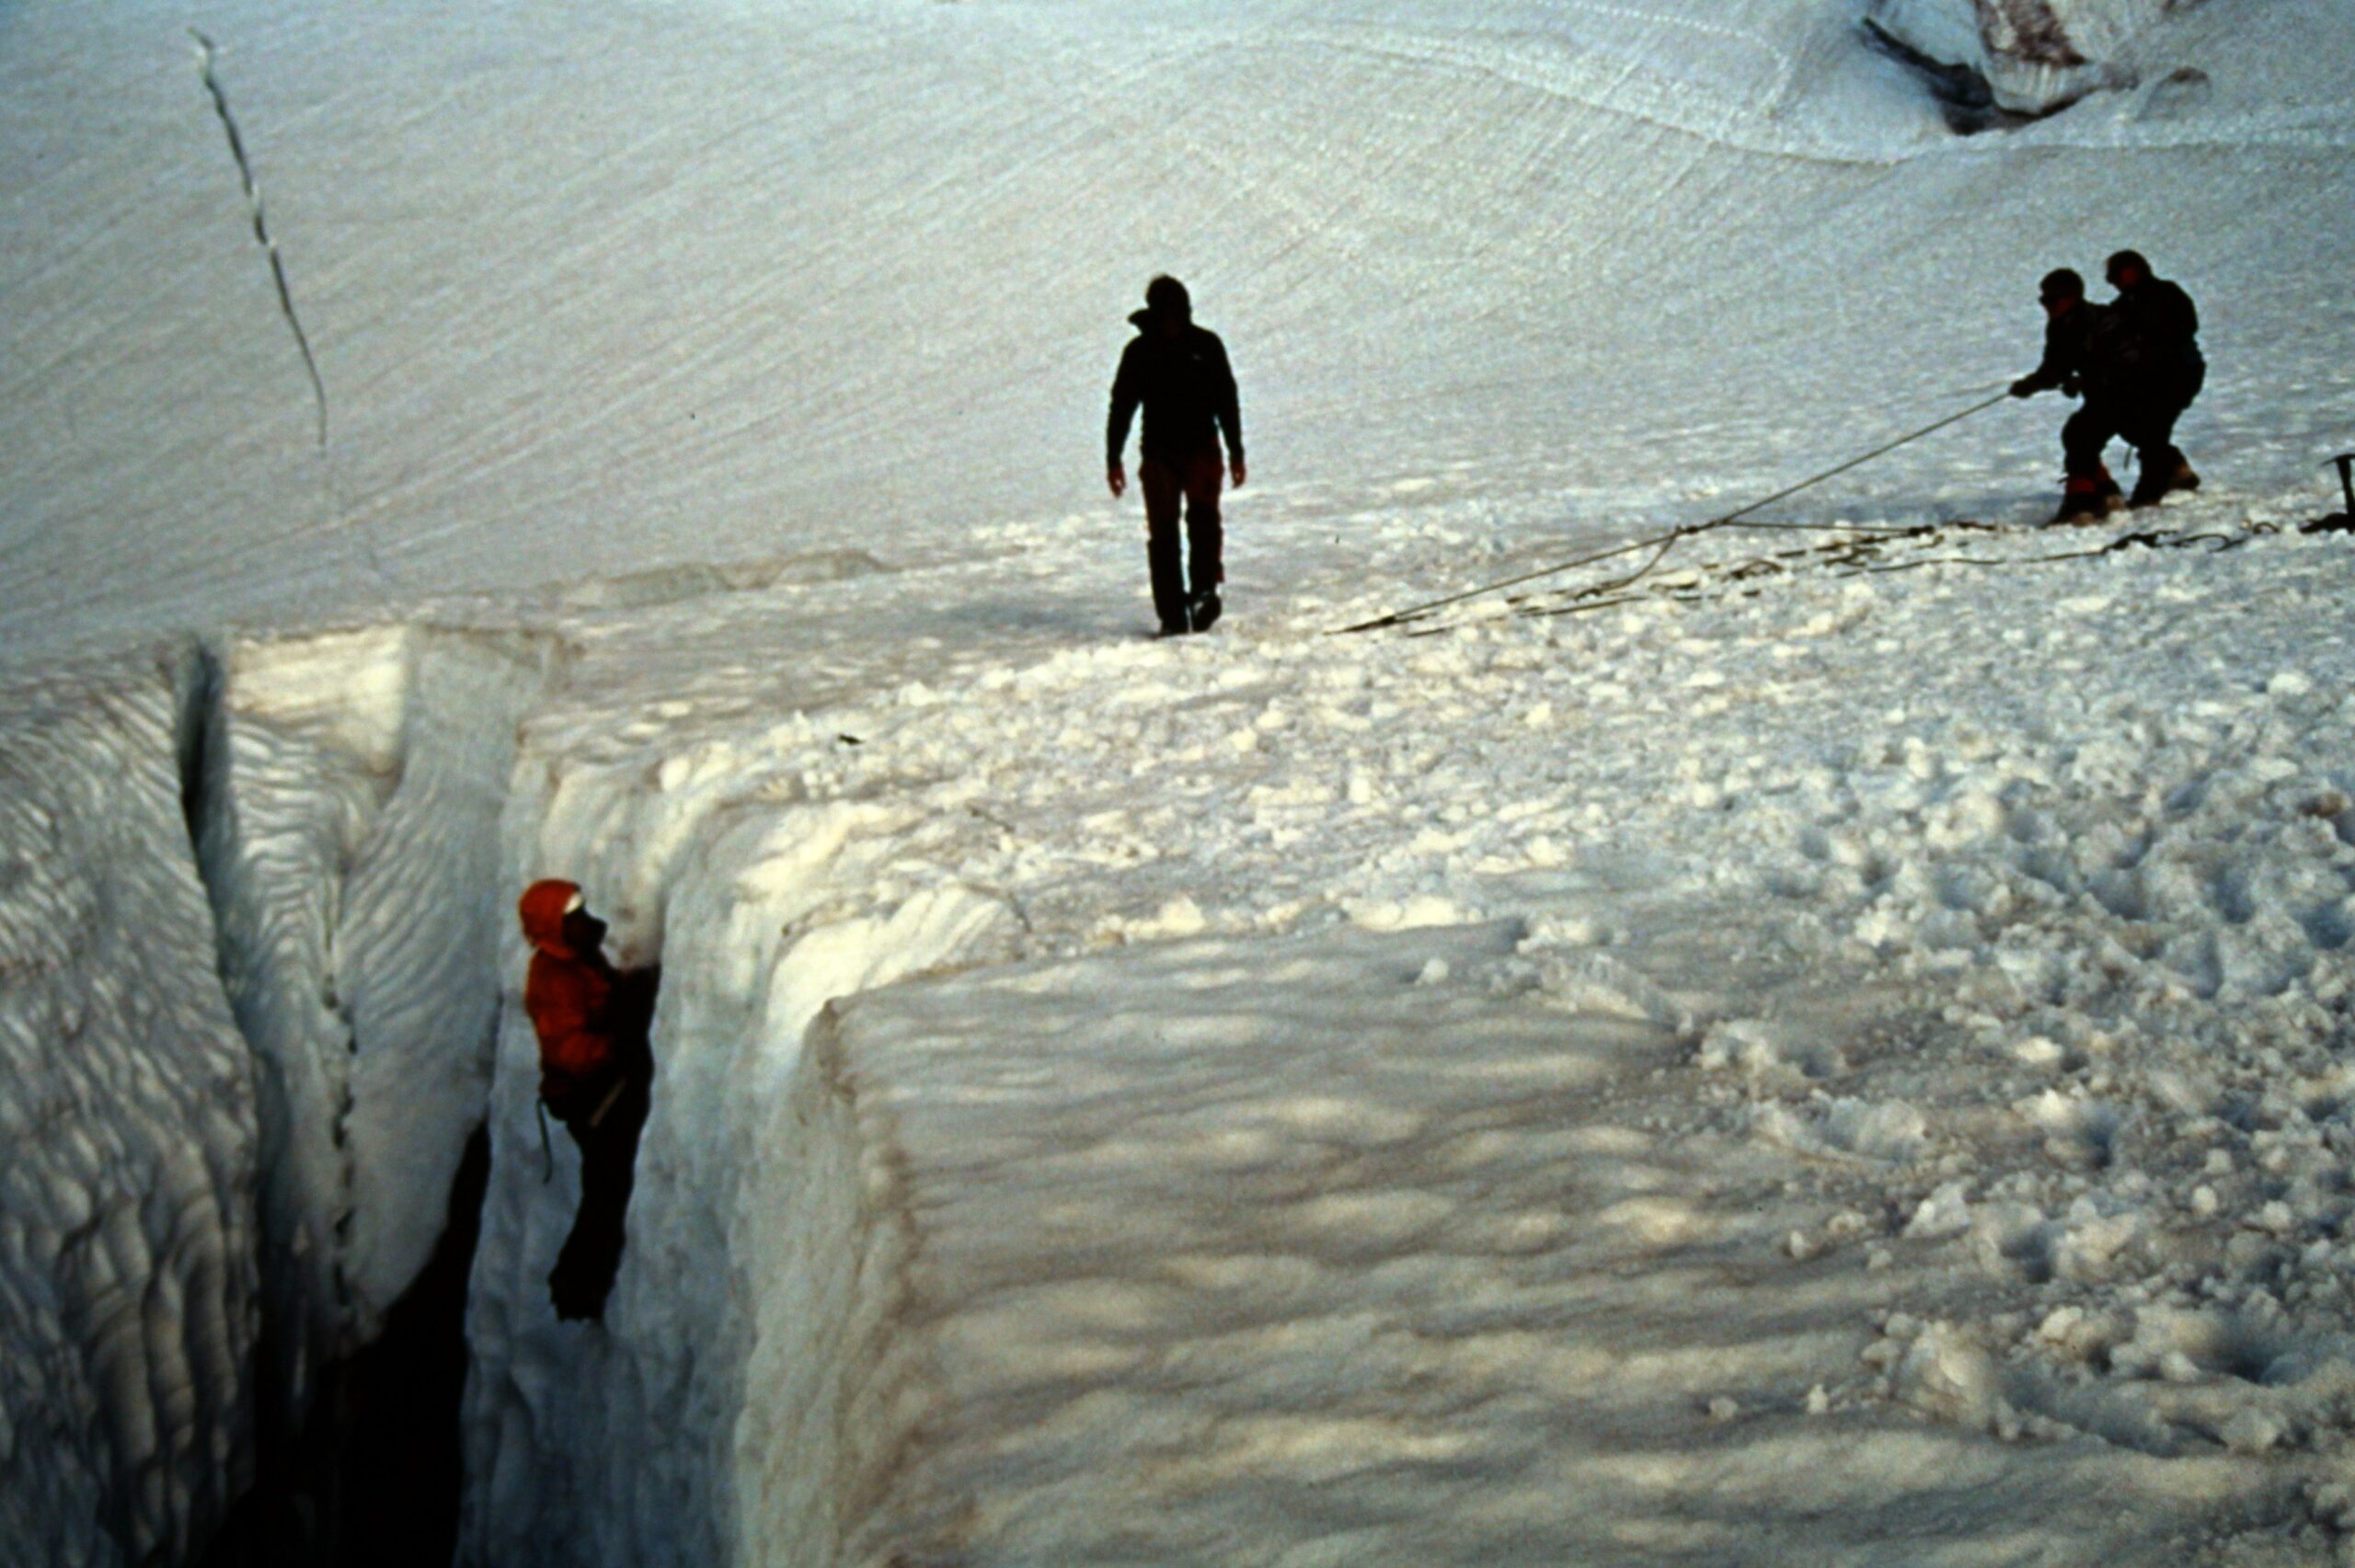 1993 Solo Person On the Glacier